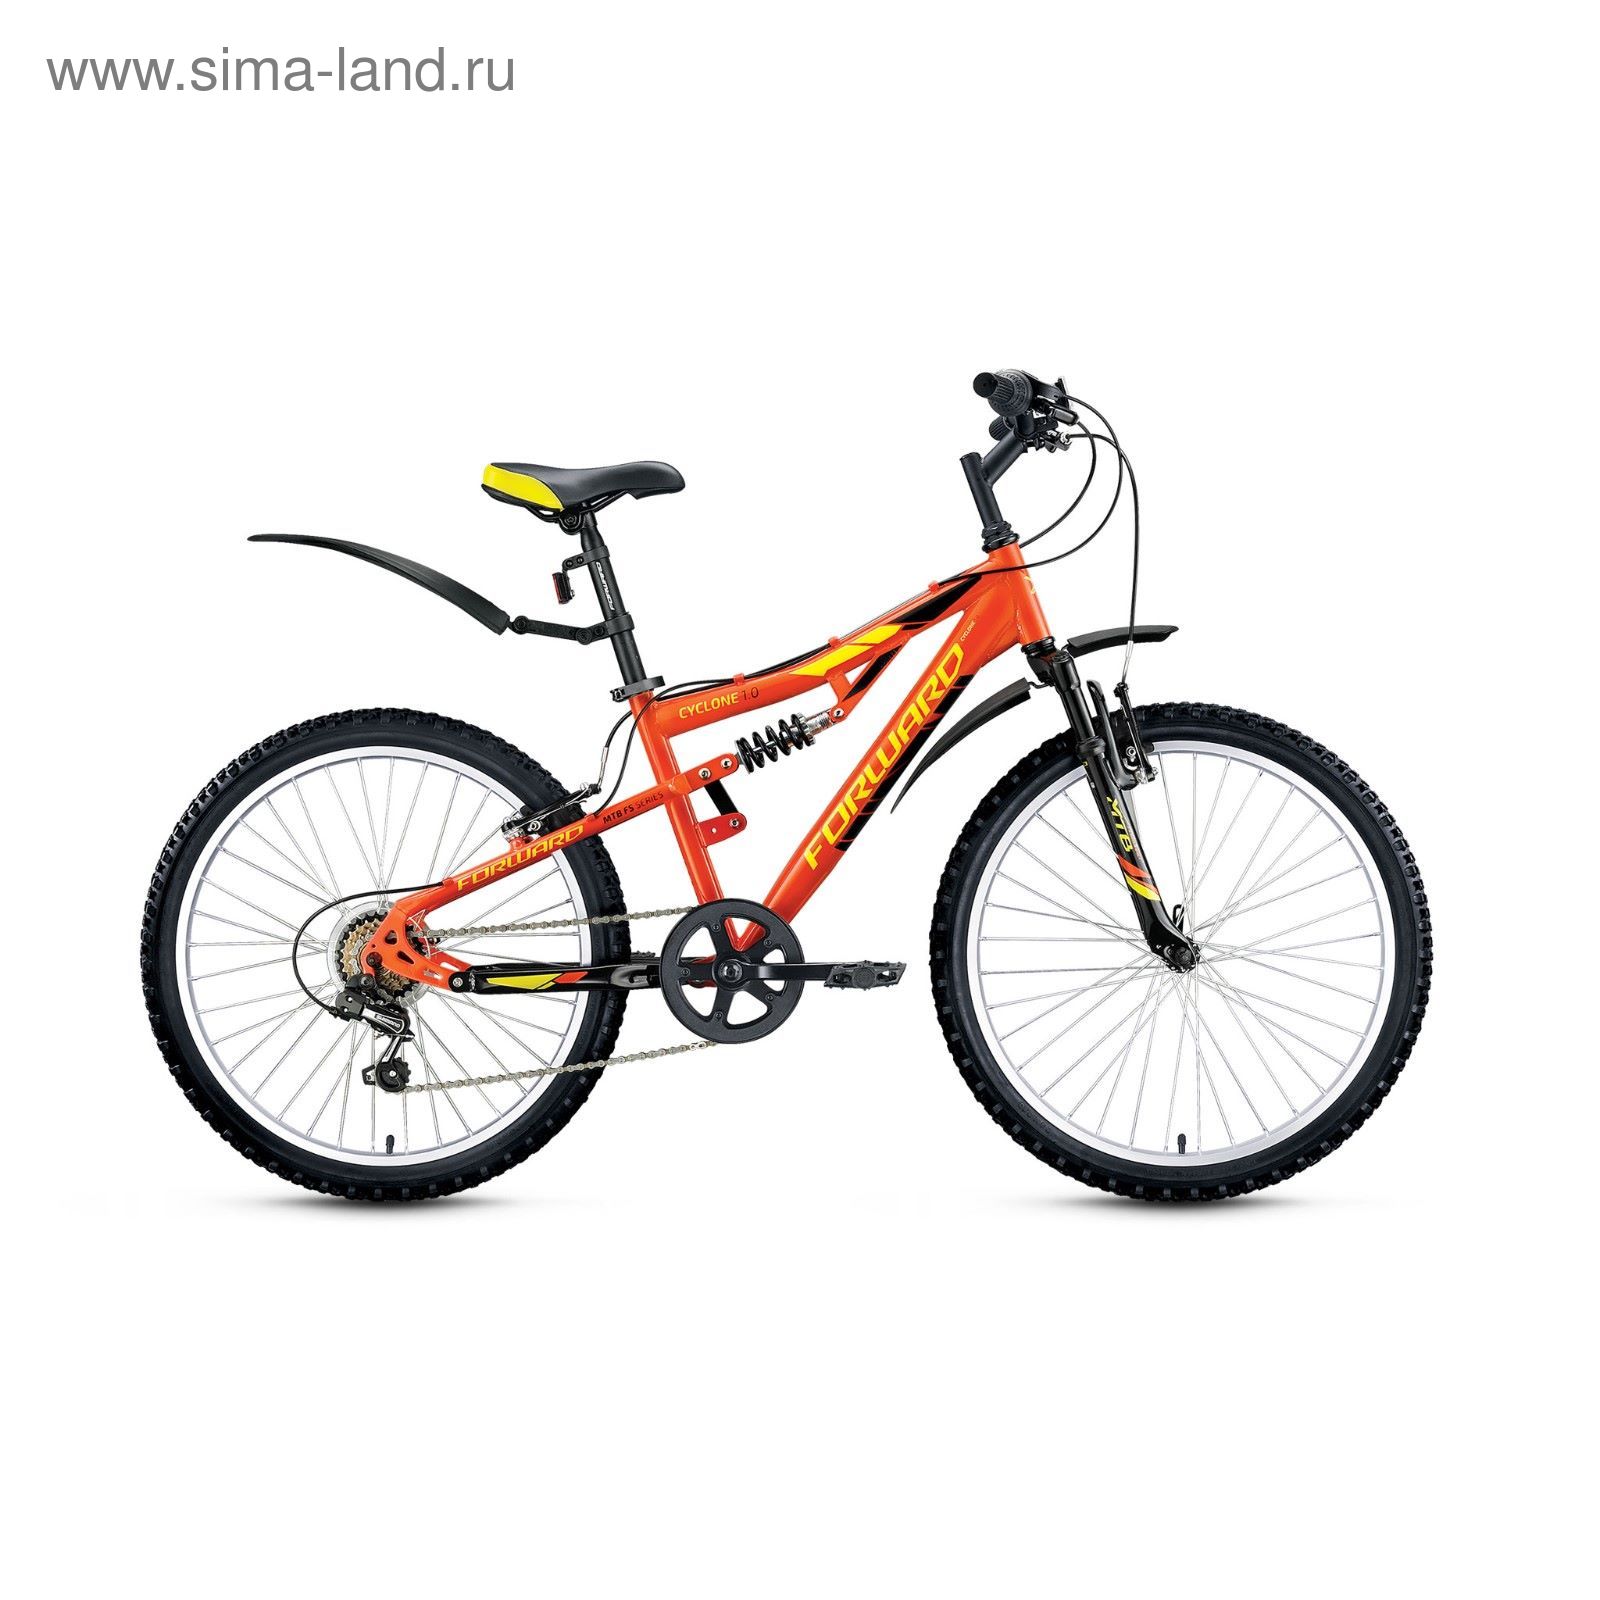 Велосипед 24" Forward Cyclone 1.0, 2017, цвет оранжевый/черный, размер 14.5"